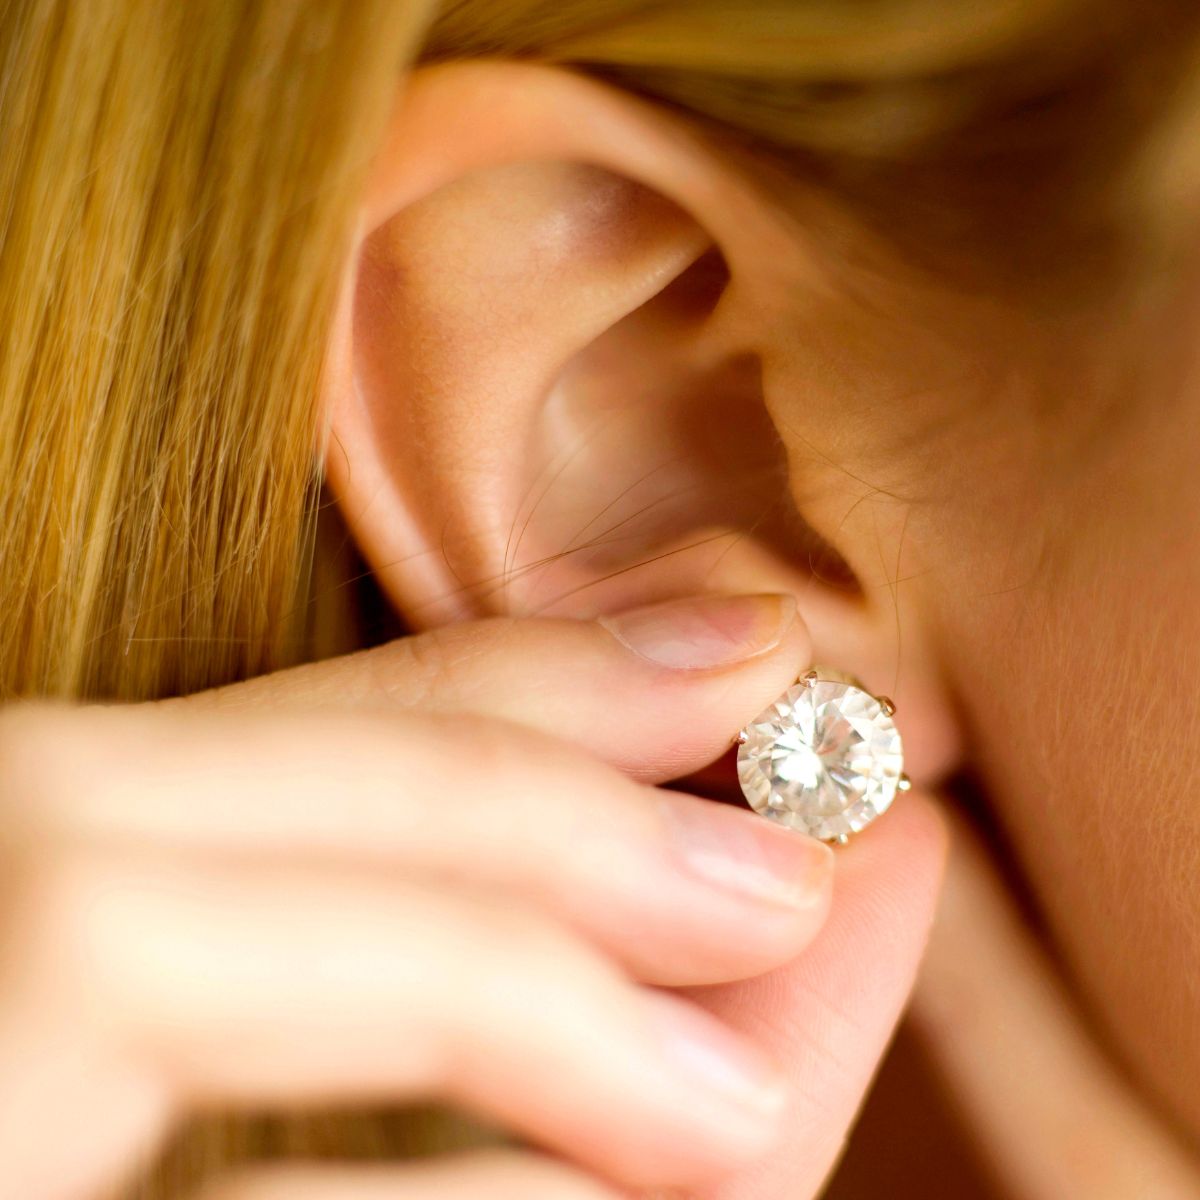 Girl holding diamond earring